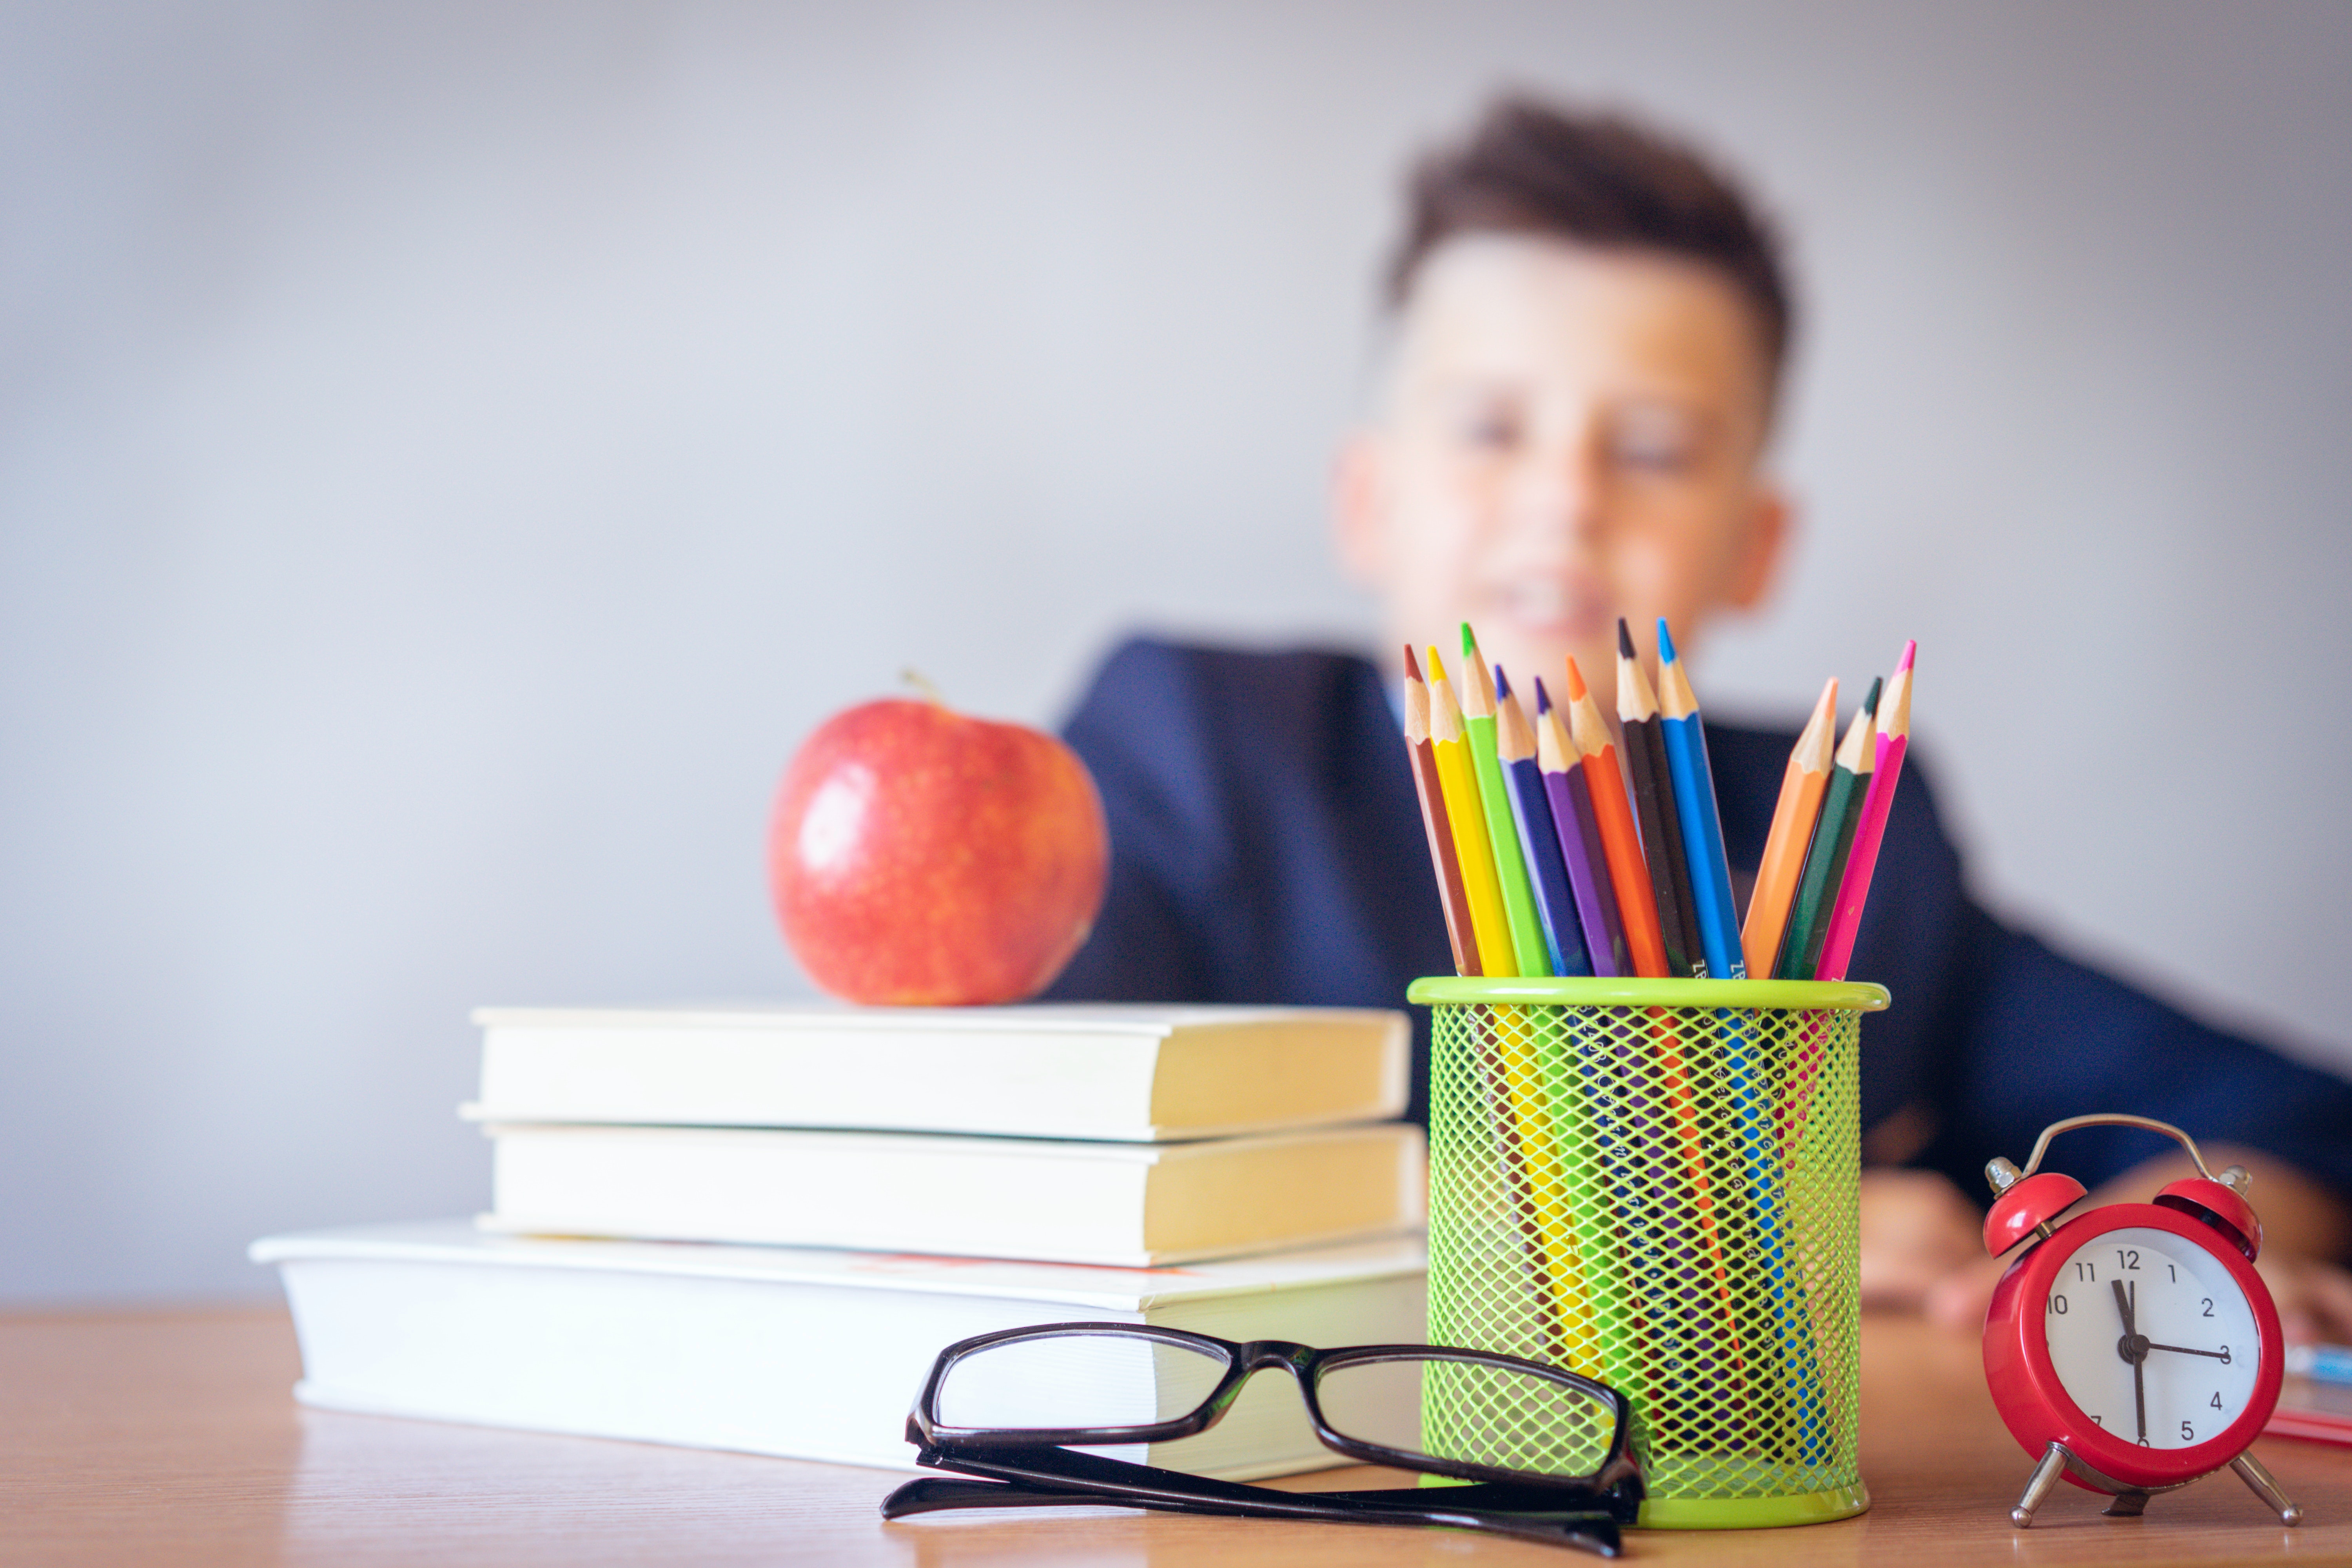 Professor sentado em sua mesa com livros, canetas, relógio e uma maçã.